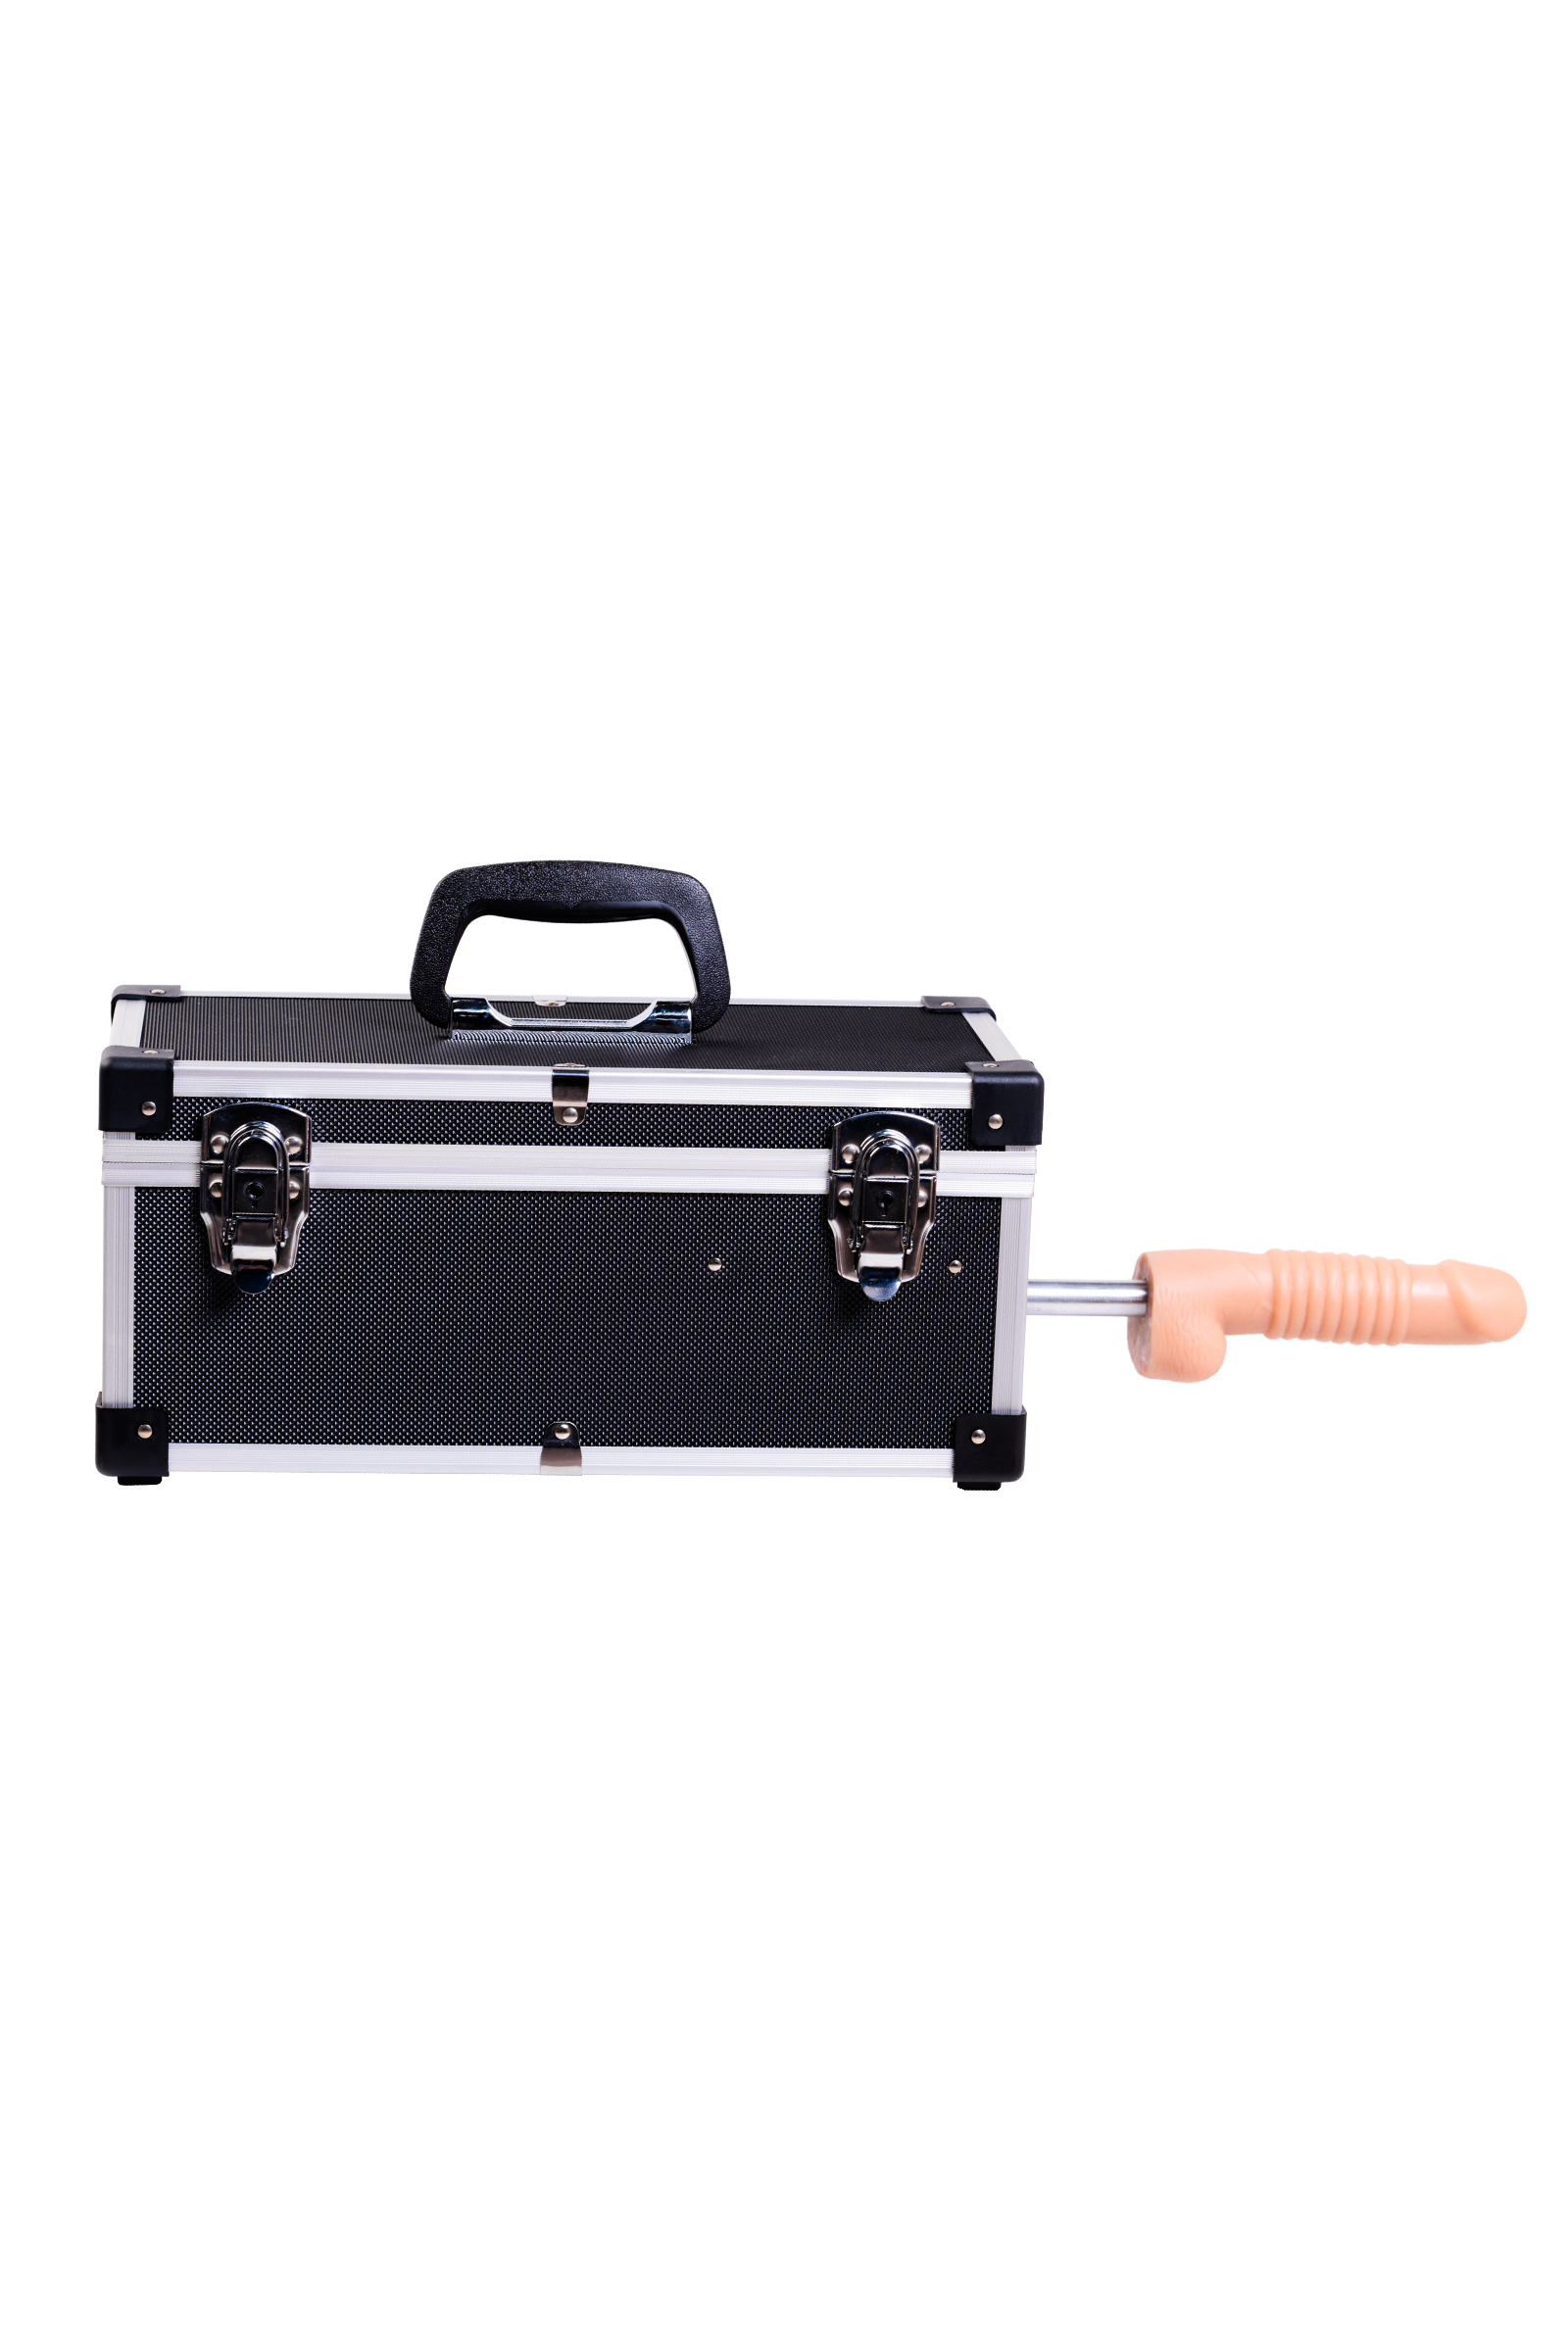 Секс-чемодан с двумя сменными насадками Diva Tool Box черный 41 см